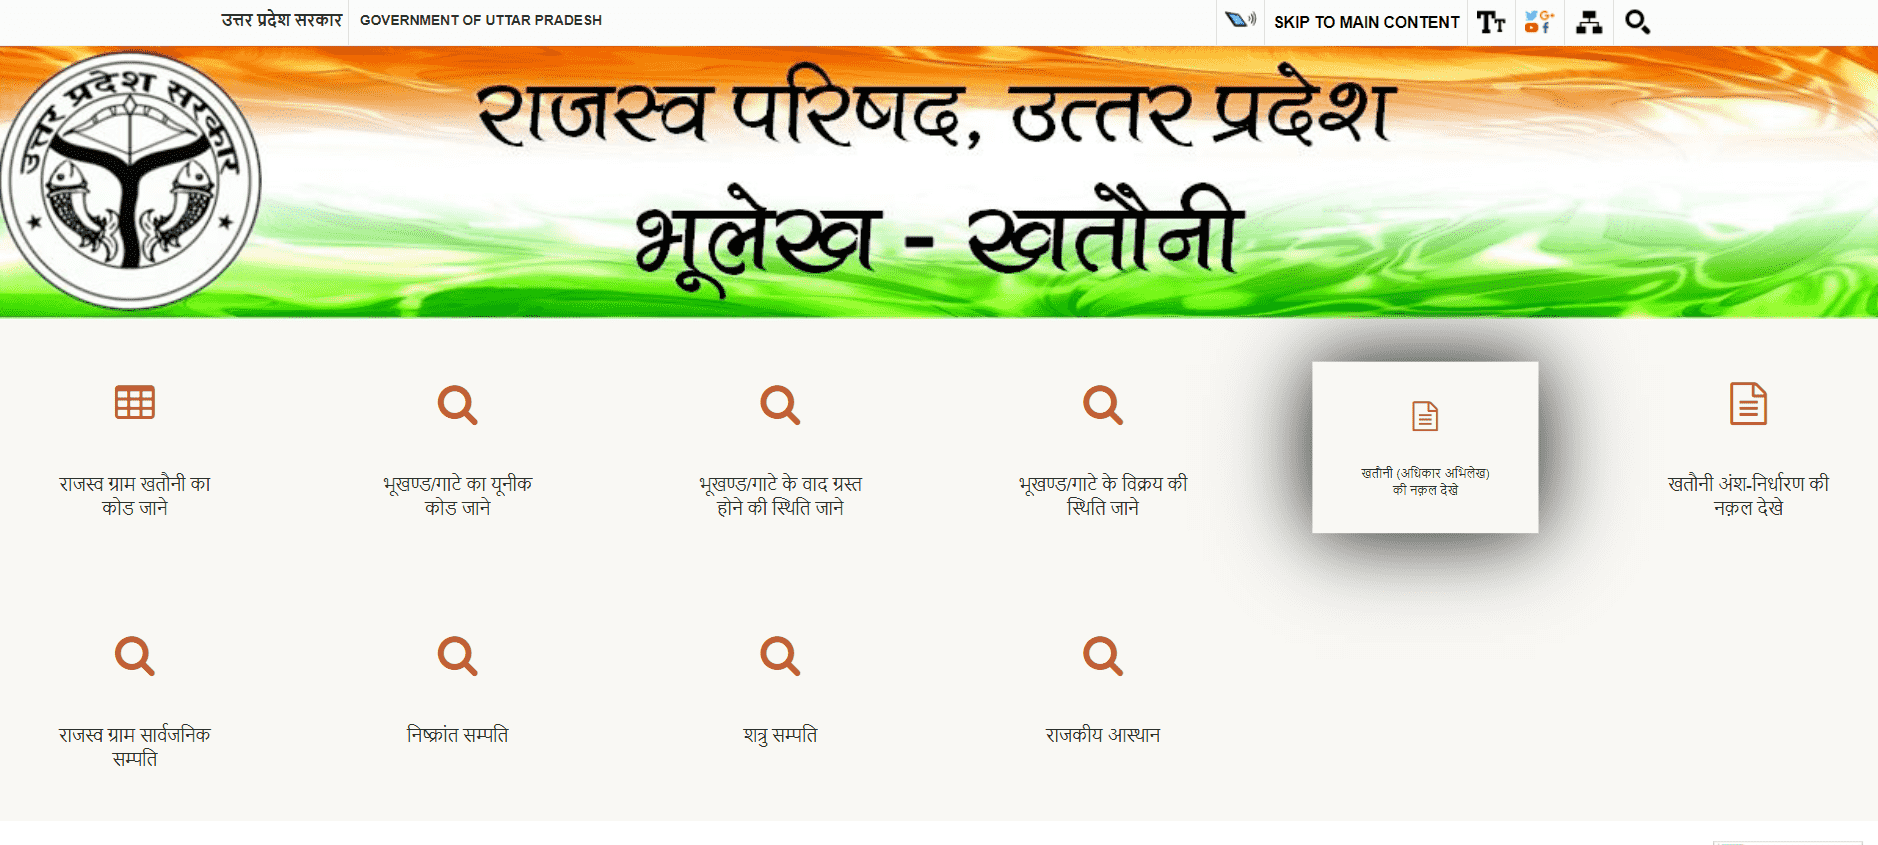 jamin-ka-naksha-dekhne-ke-lie-website-aur-apps